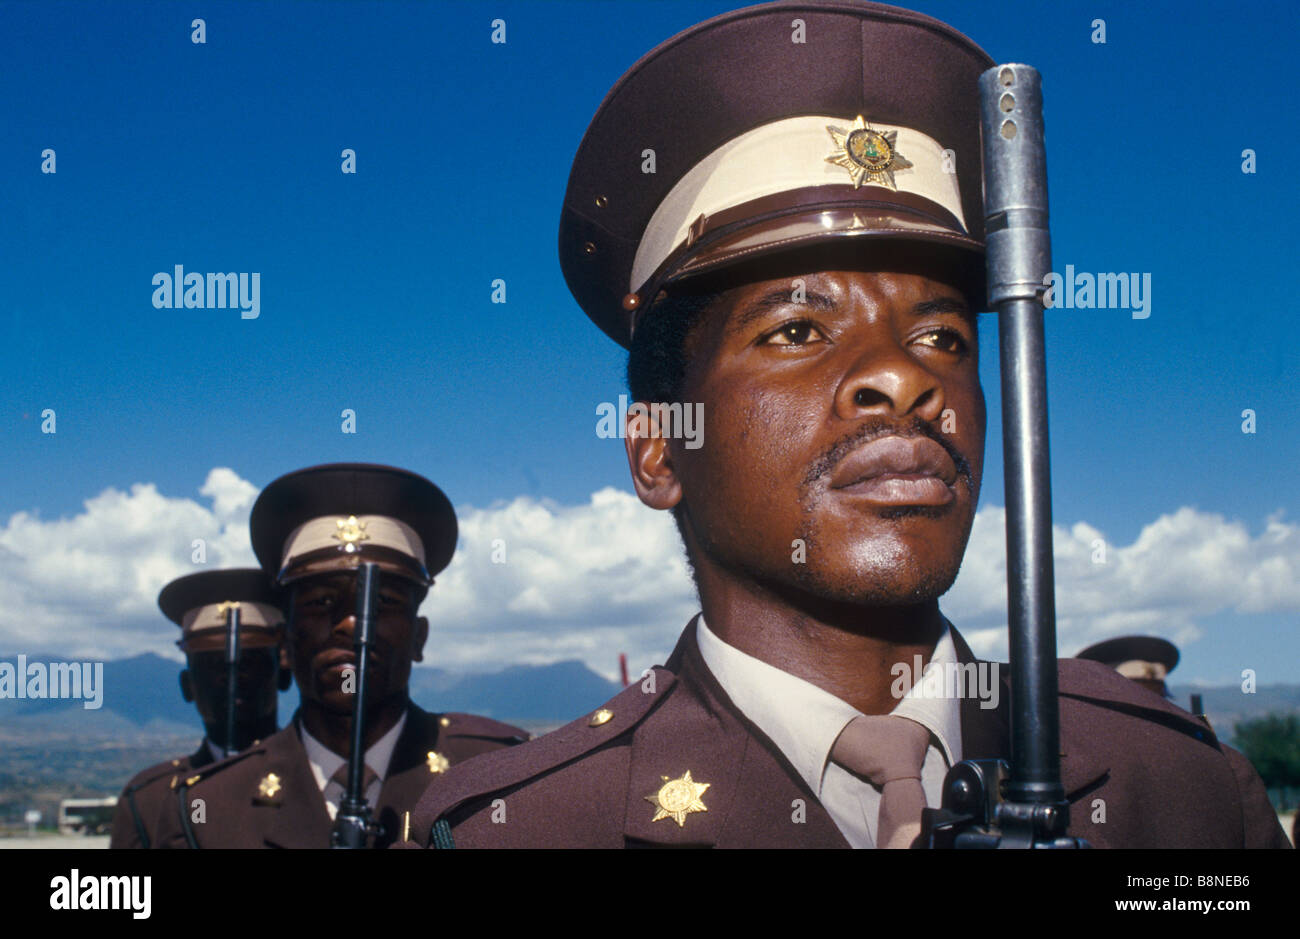 El último desfile militar celebrado en Qwa-Qwa uno del régimen de apartheid Sudafricano bantustán patrias ca. 1993 Foto de stock